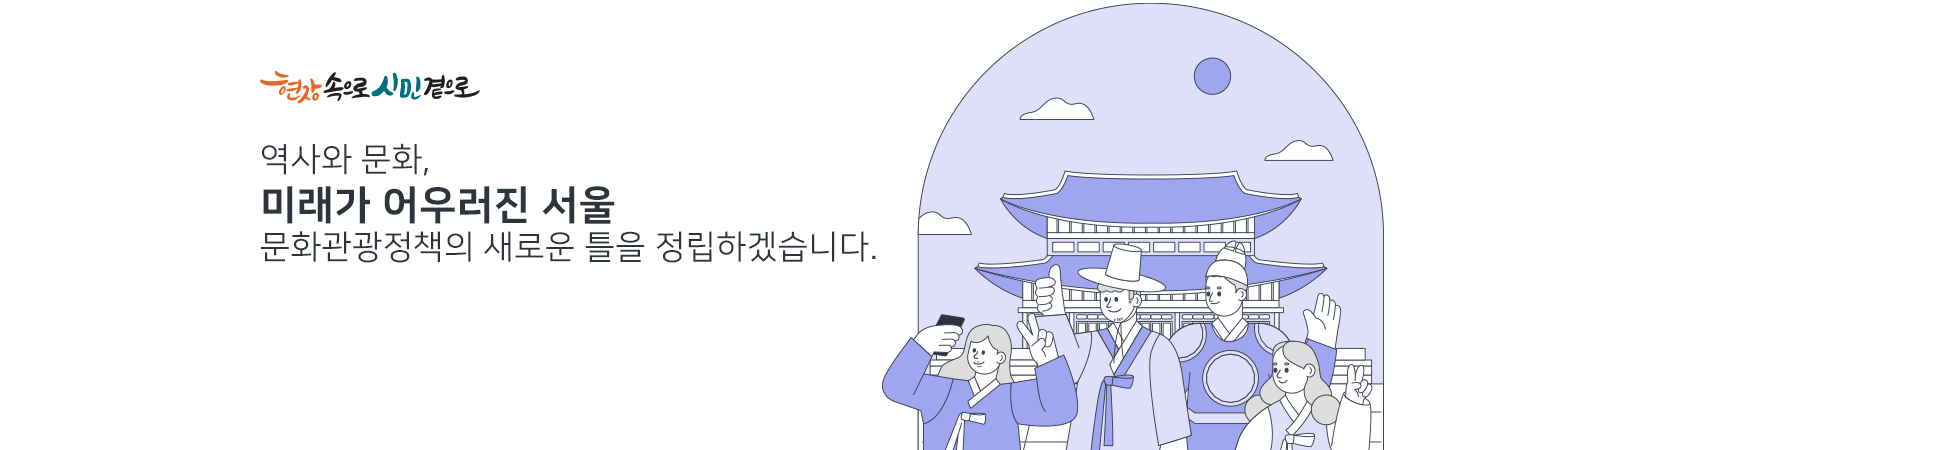 역사와 문화,
미래가 어우러진 서울
문화정책의 새로은 틀을 정립하겠습니다.